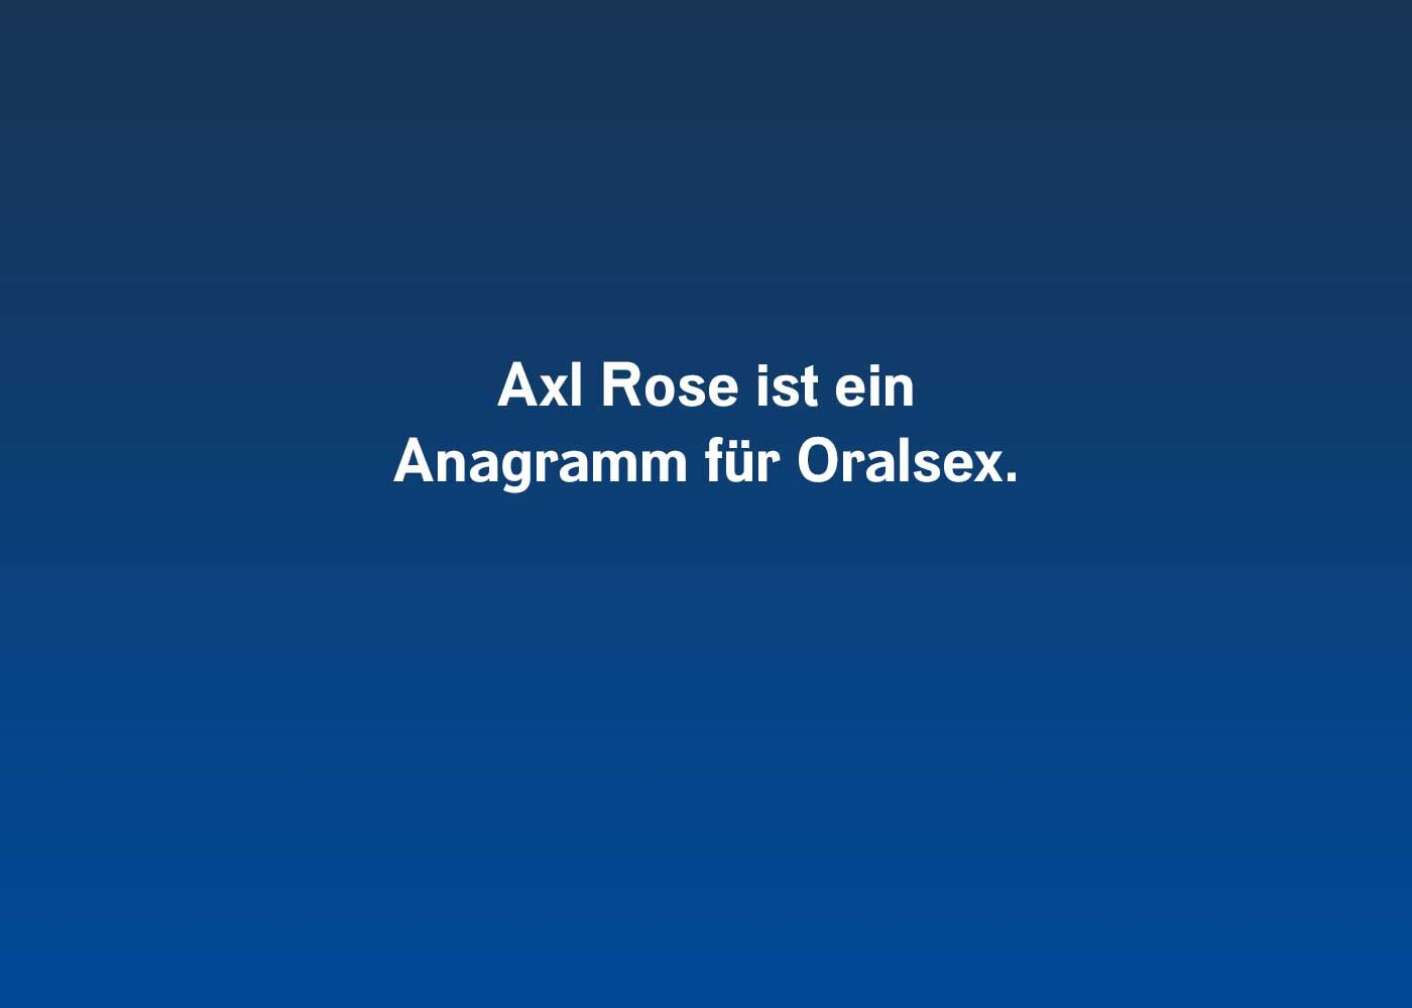 Fakt über Axl Rose als Fließtext